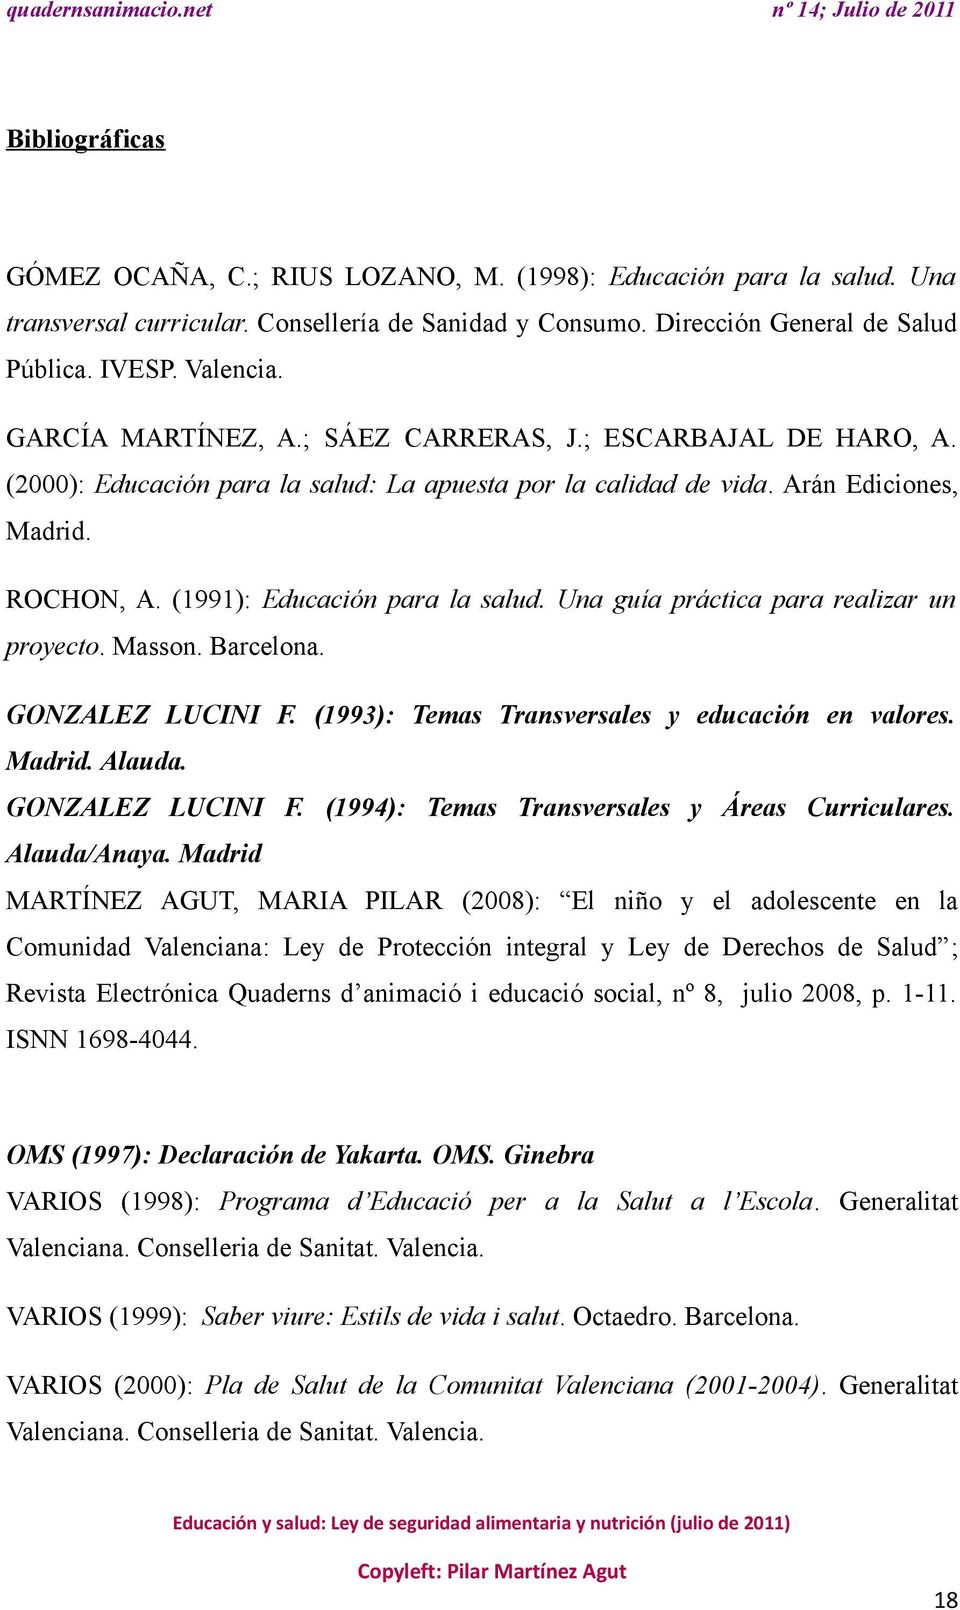 Una guía práctica para realizar un proyecto. Masson. Barcelona. GONZALEZ LUCINI F. (1993): Temas Transversales y educación en valores. Madrid. Alauda. GONZALEZ LUCINI F. (1994): Temas Transversales y Áreas Curriculares.